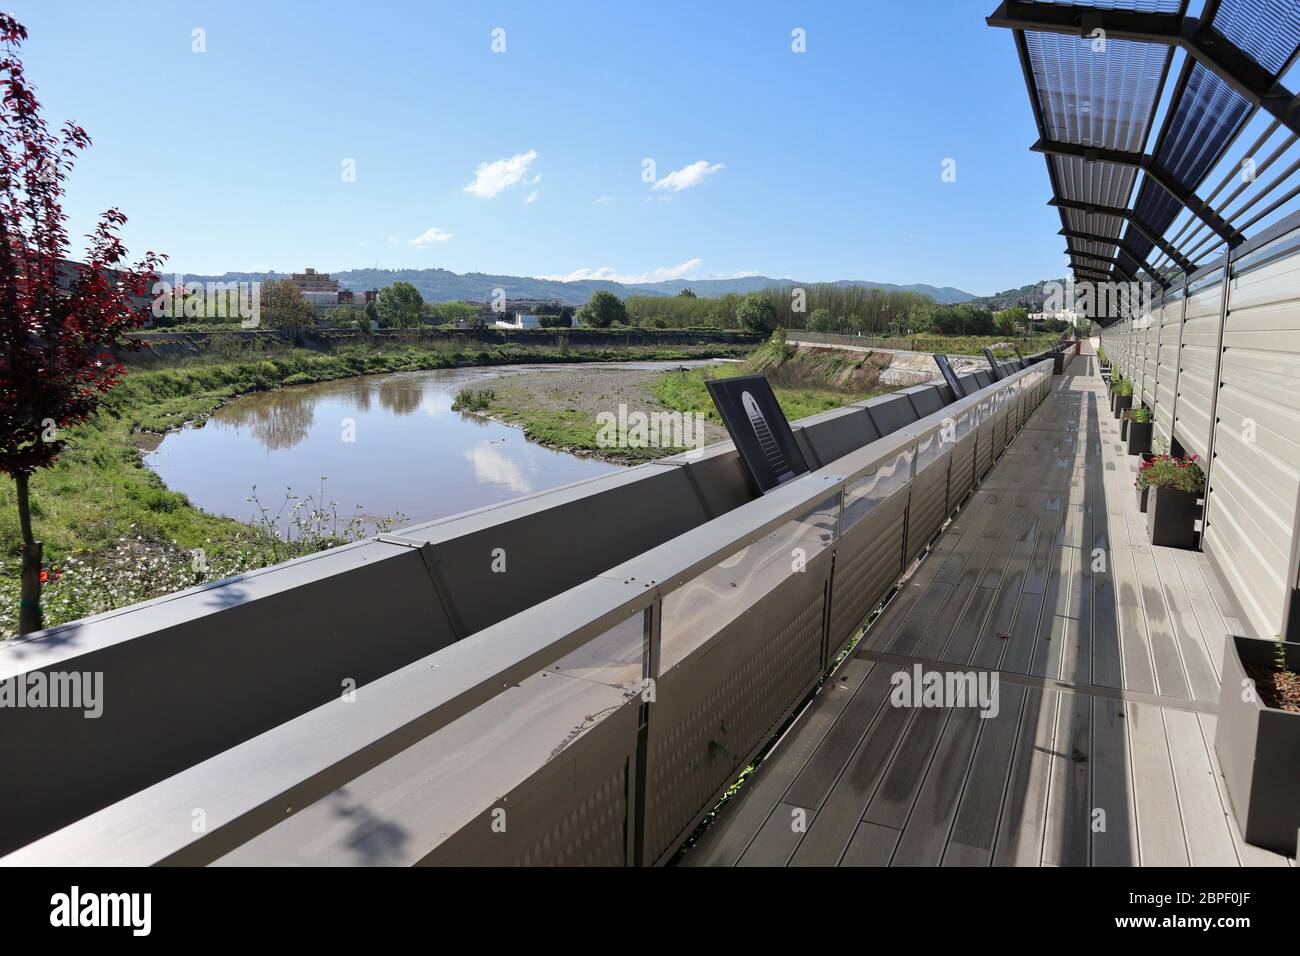 Benevento - Il nuovo ponte pedonale sul fiume Sabato Foto de stock